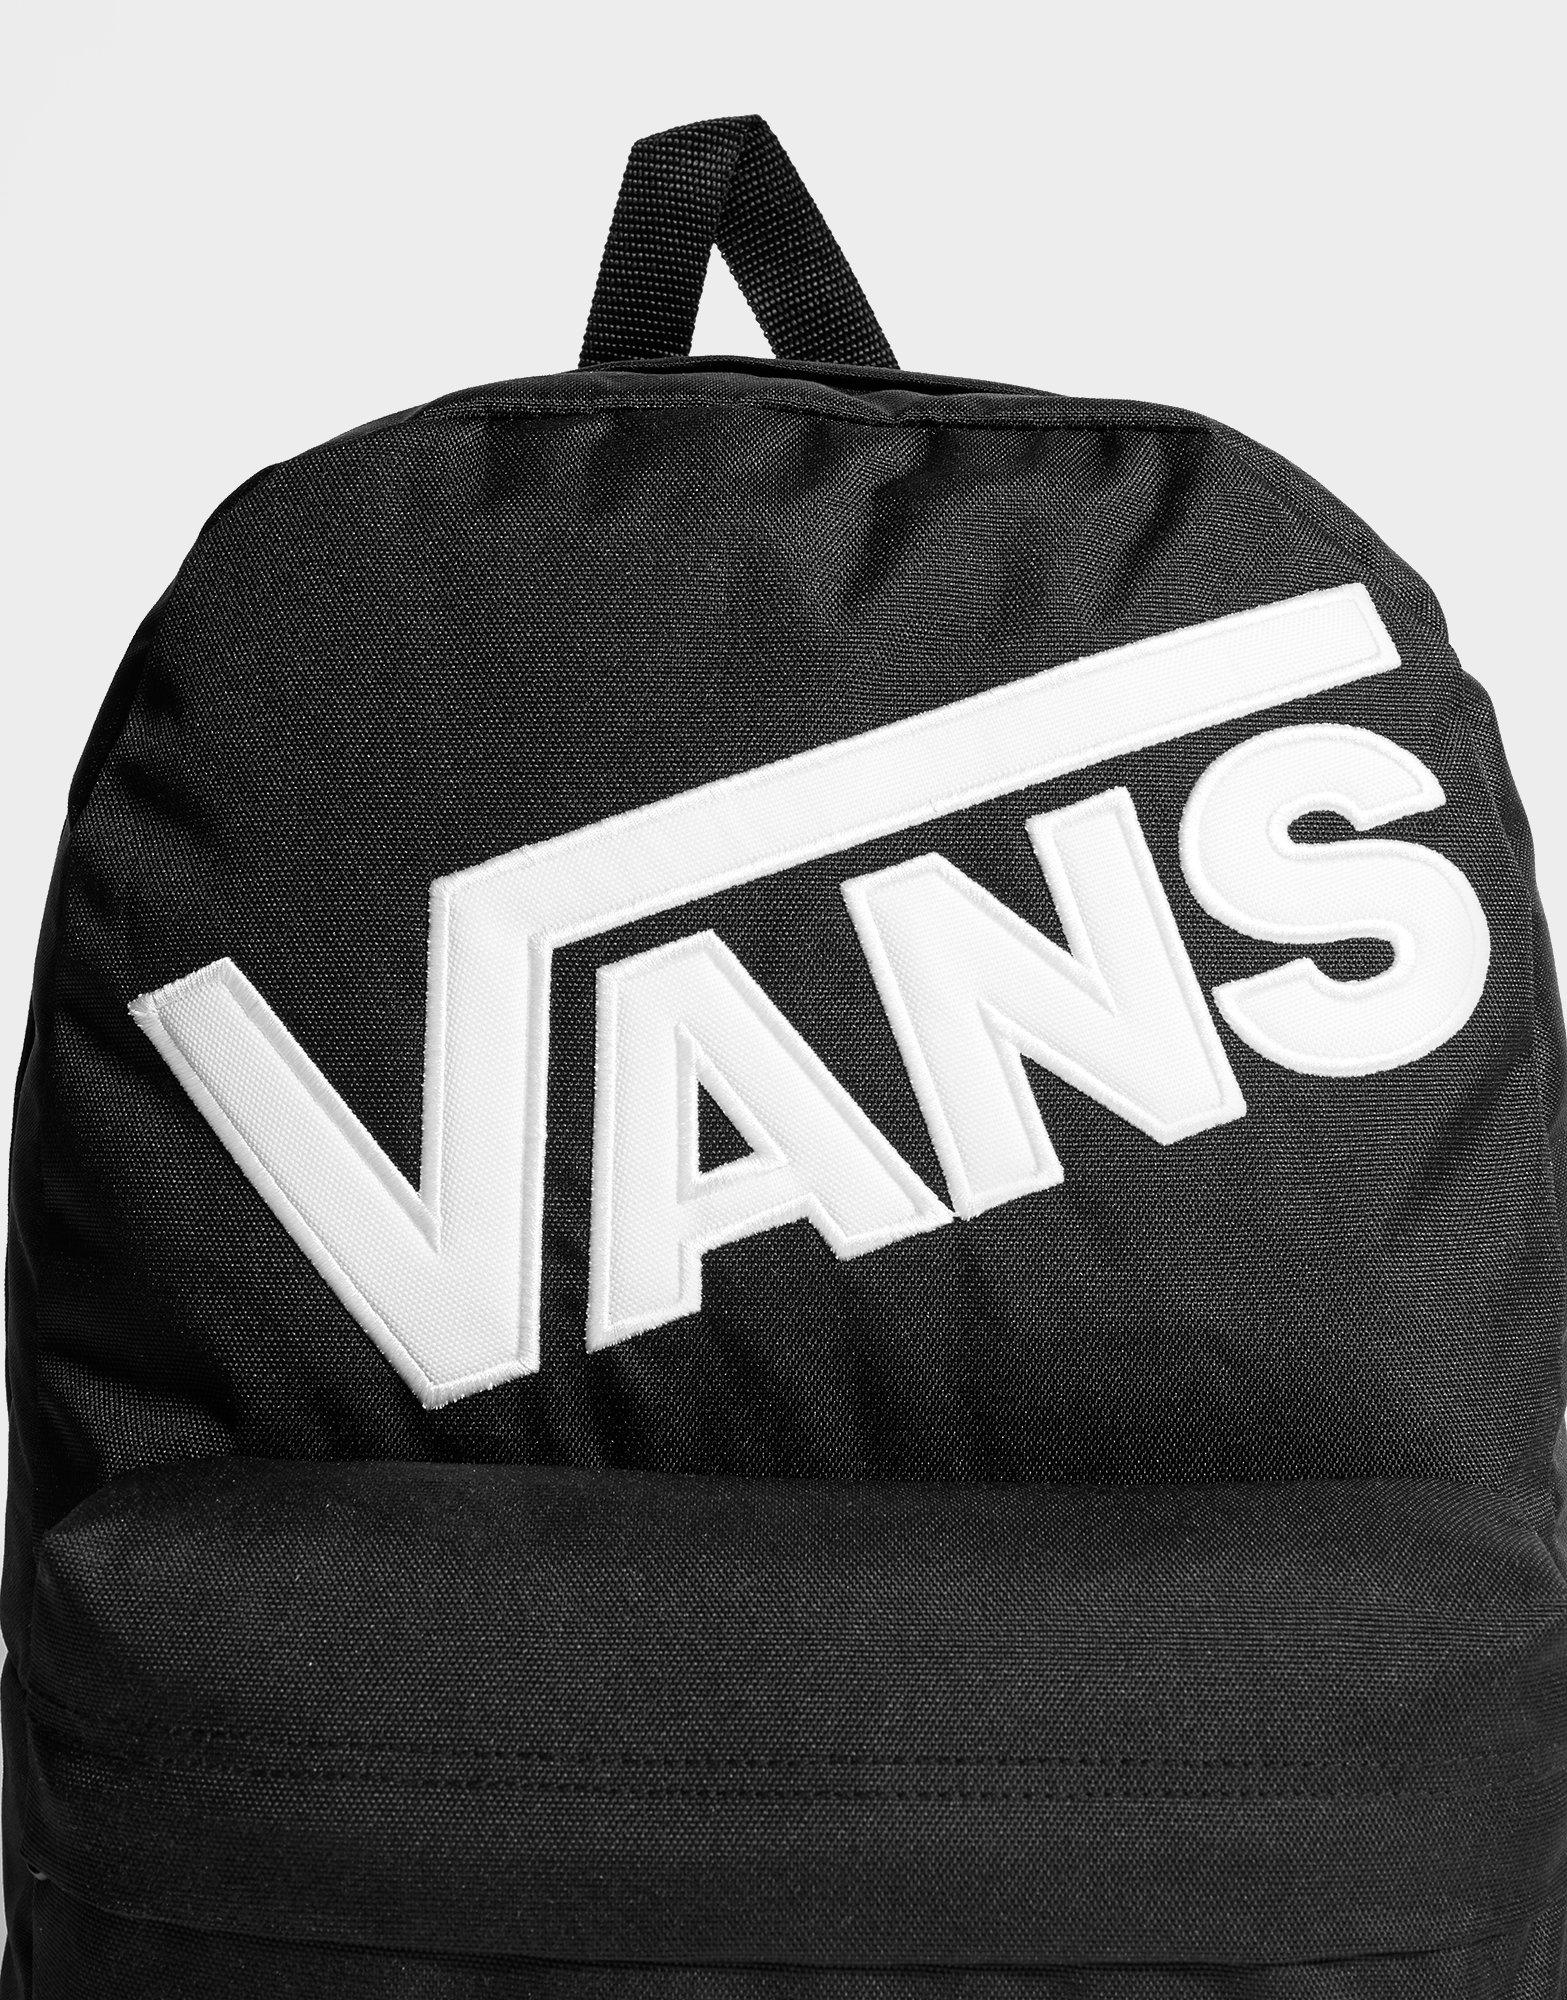 vans backpack discount code